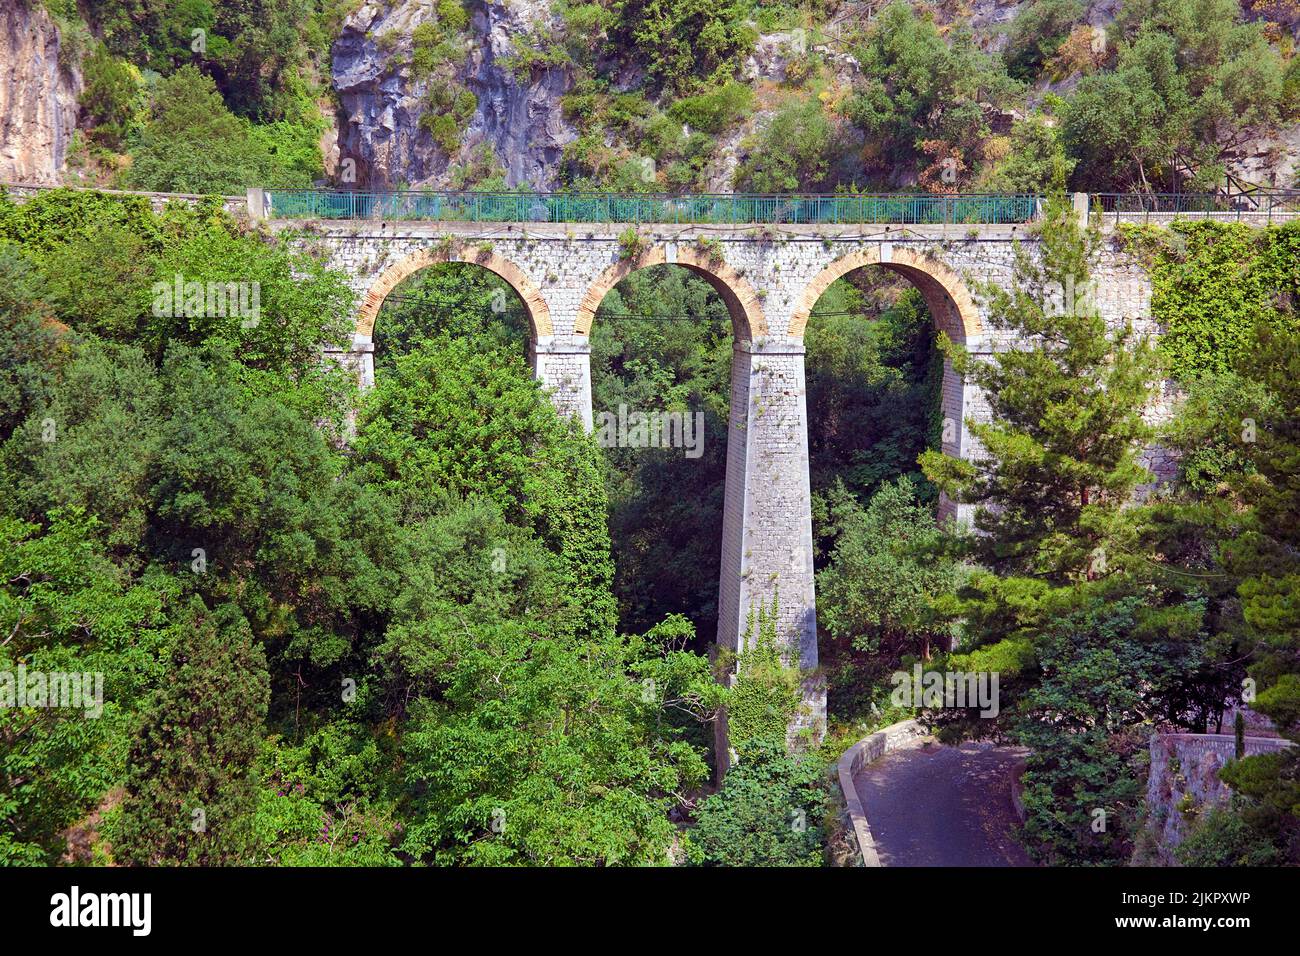 Famosa strada panoramica SS163 Amalfi, vicino Positano, Costiera Amalfitana, Patrimonio dell'Umanità dell'UNESCO, Campania, Italia, Europa Foto Stock